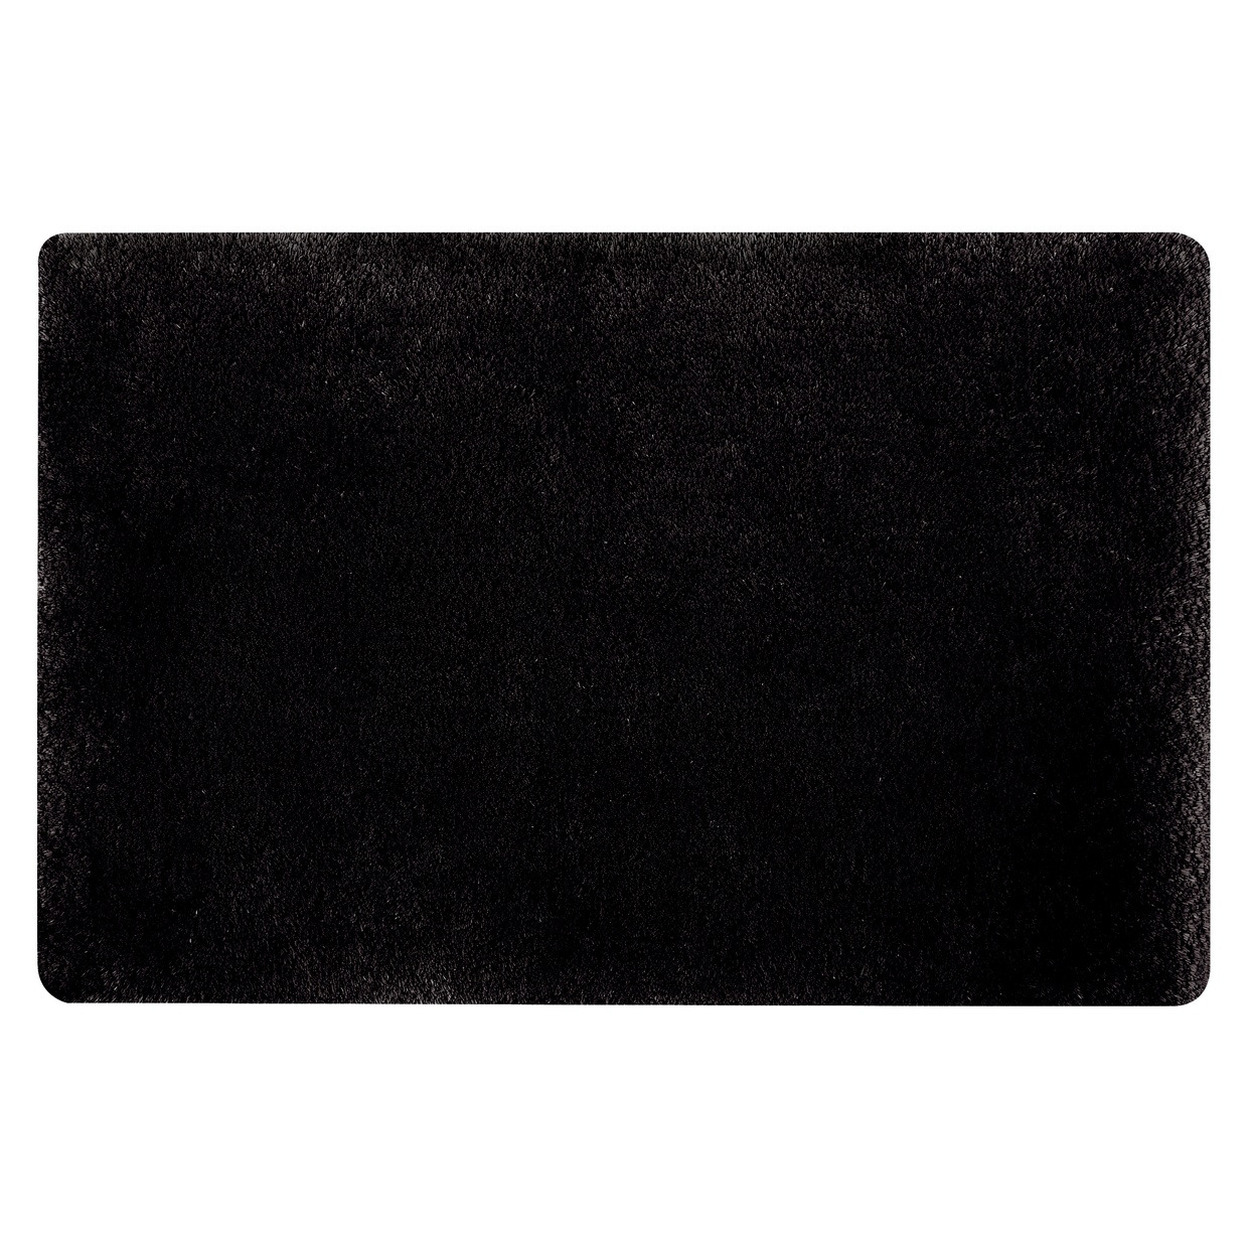 Spirella badkamer vloer kleedje-badmat tapijt hoogpolig en luxe uitvoering zwart 50 x 80 cm Microfib